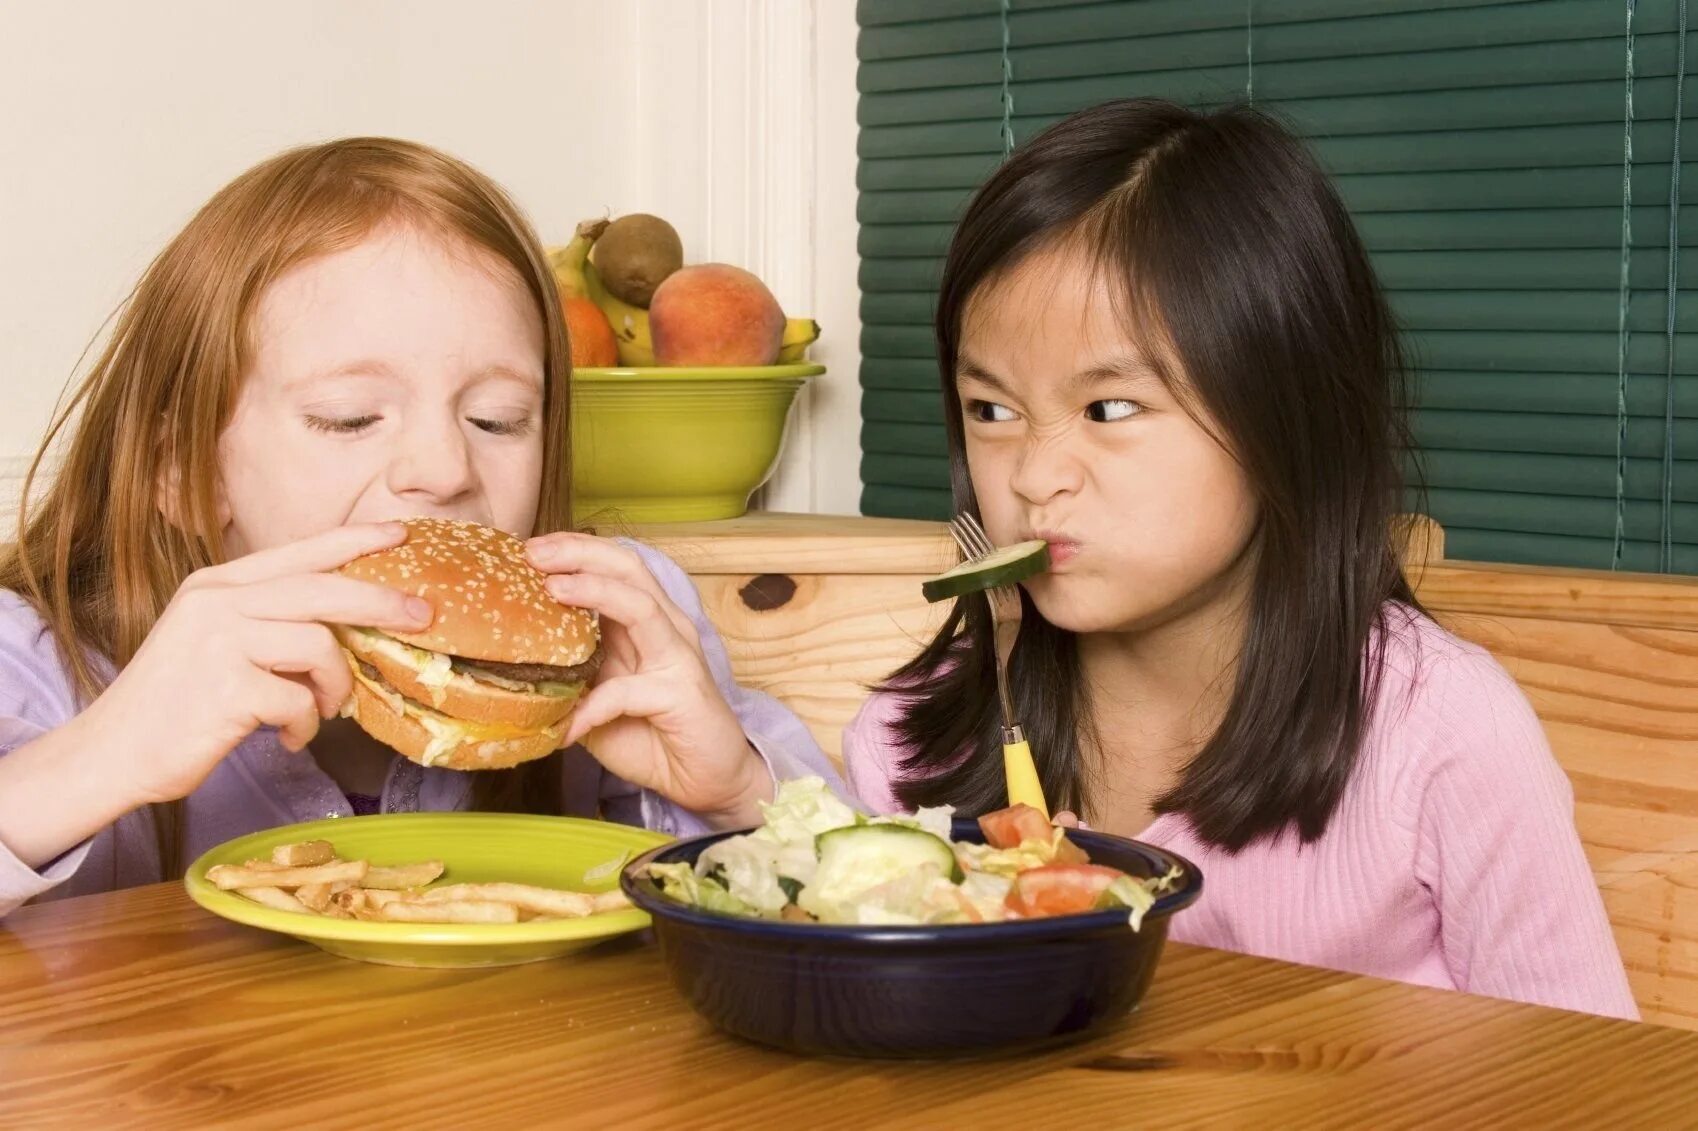 Еда невкусная почему. Питание детей. Подростки и еда. Правильное питание для детей. Здоровое питание для подростков.